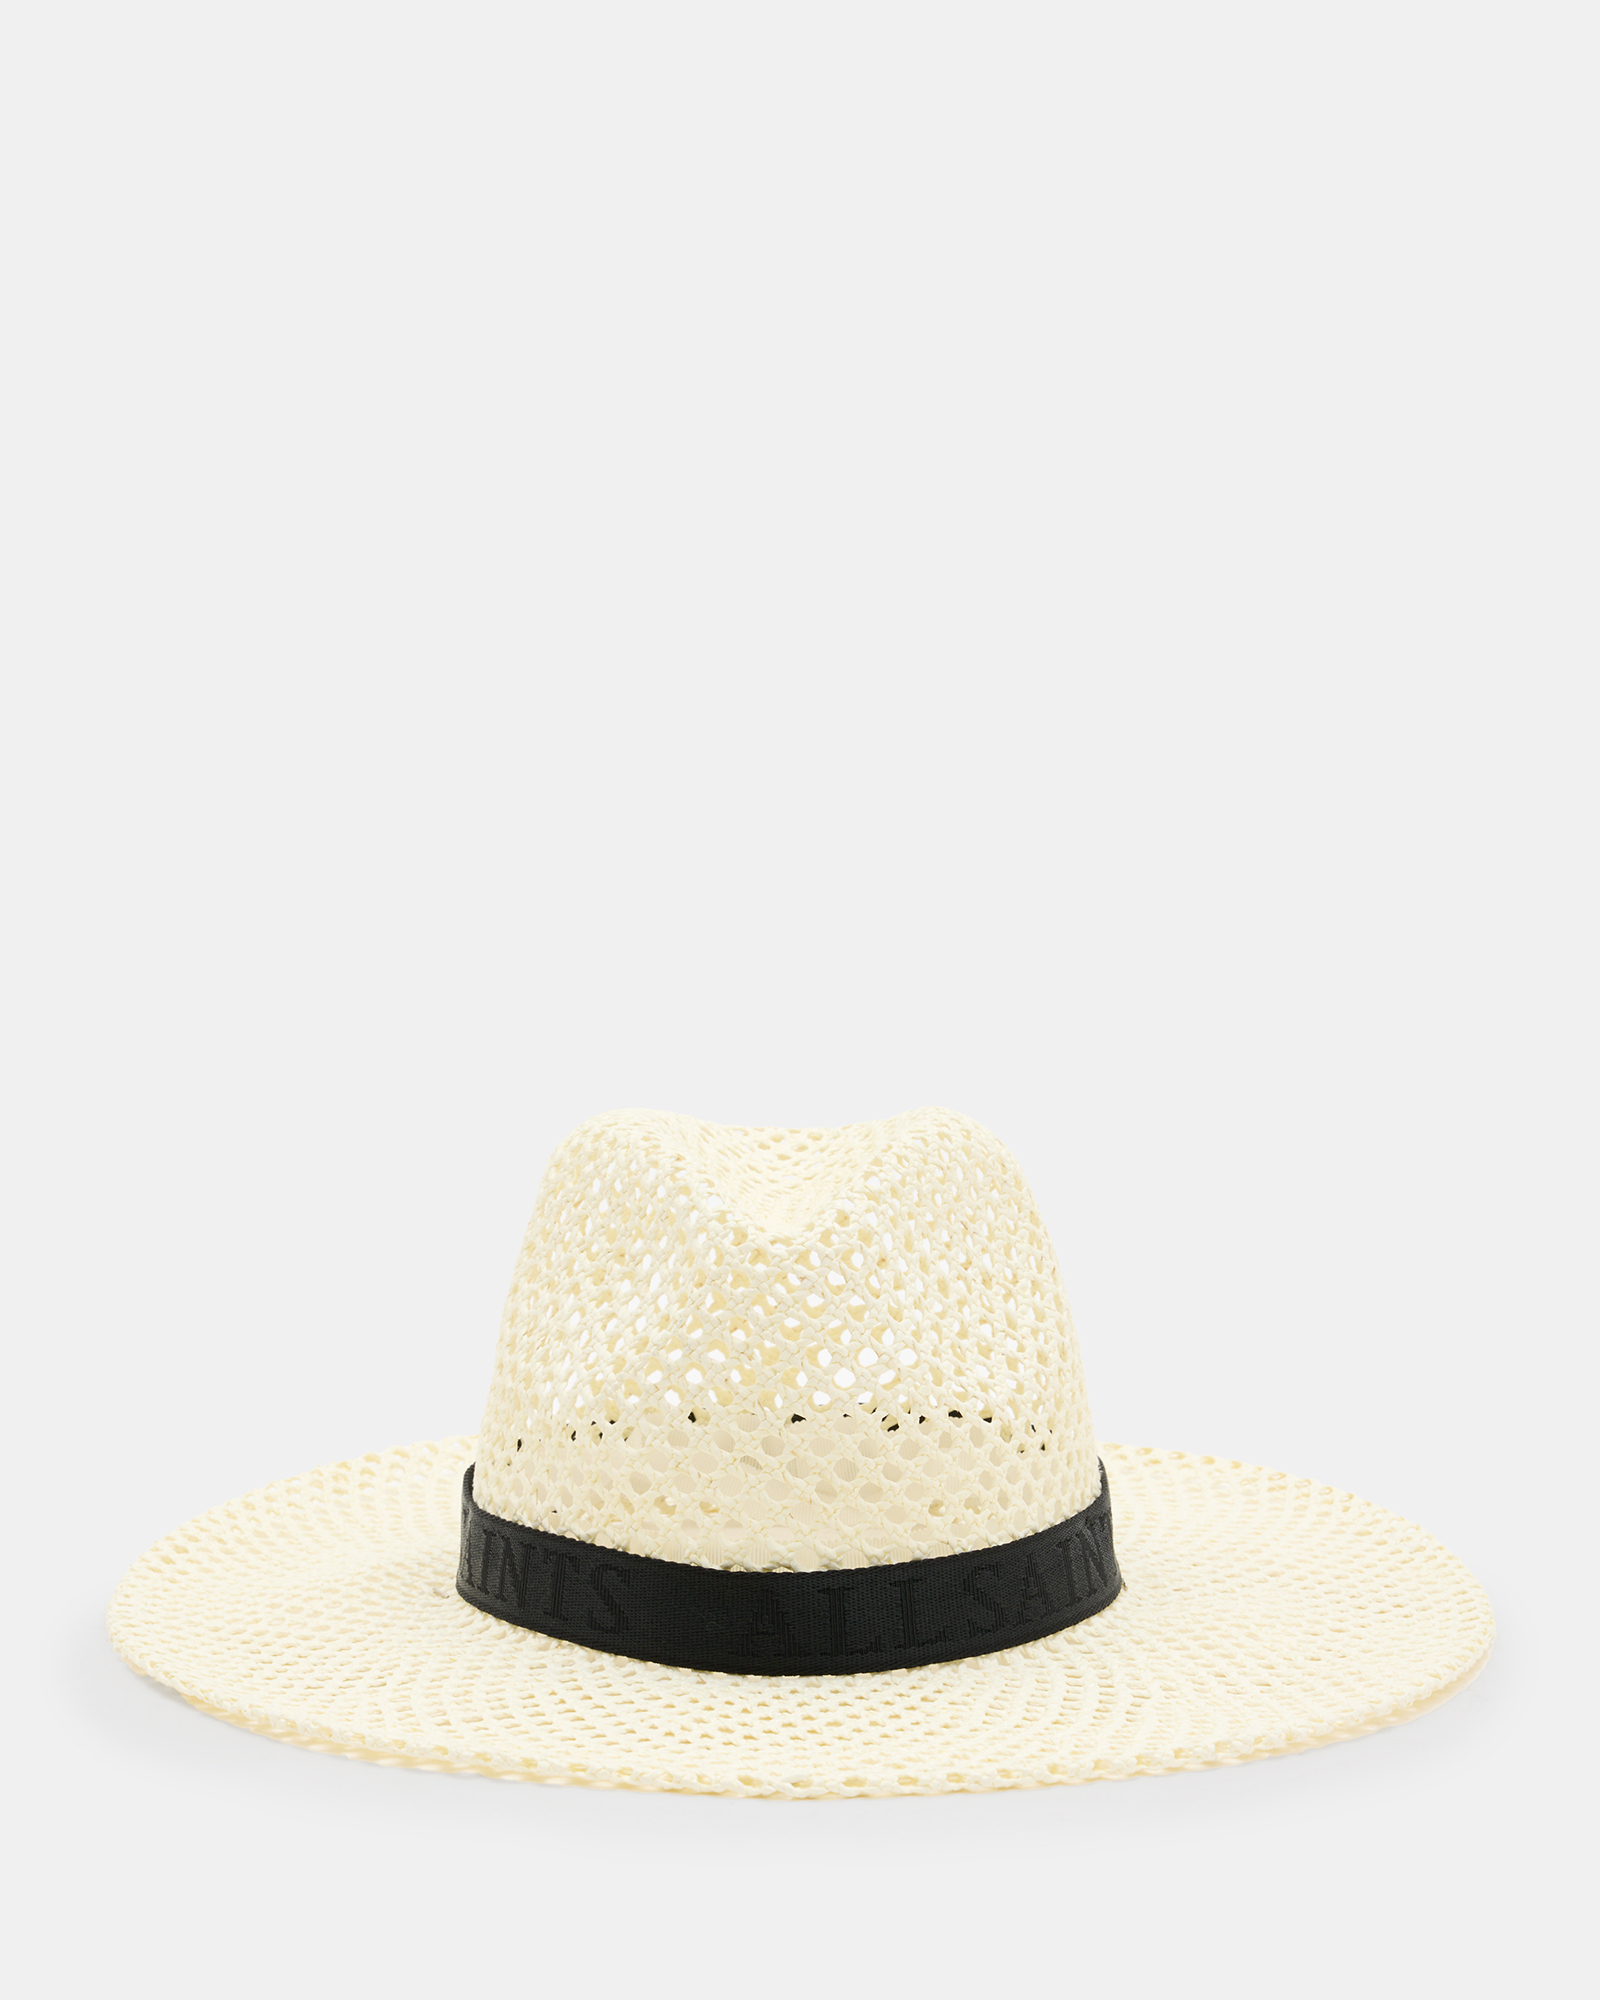 AllSaints Suvi Straw Fedora Hat,, ECRU WHITE